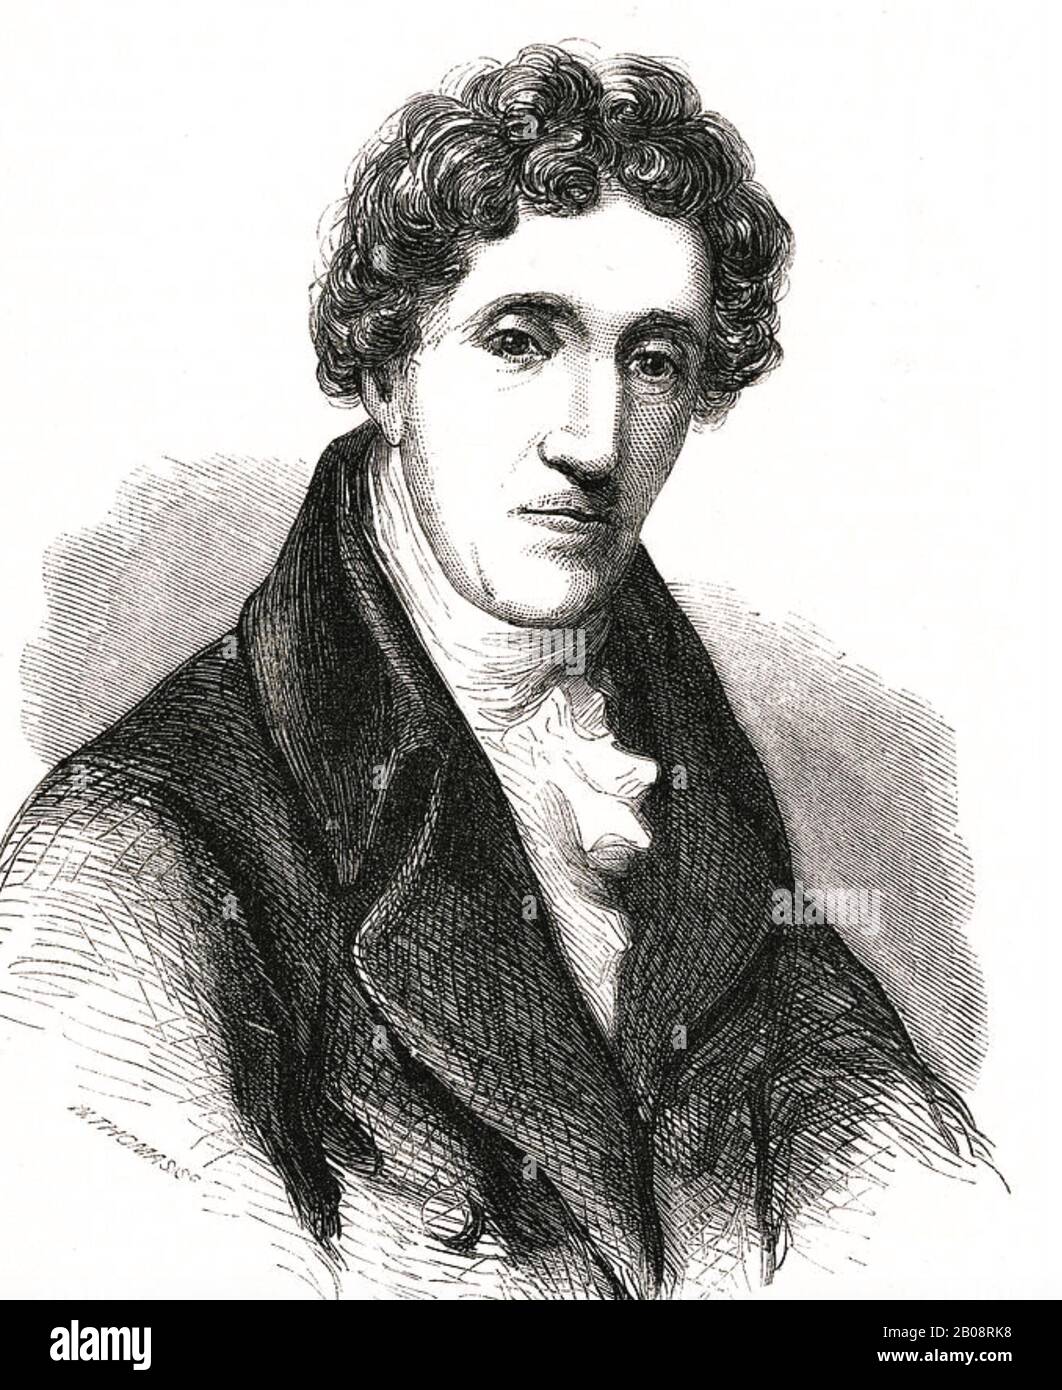 Thomas COUTTS (1735-1822) englischer Banker, der das Bankhaus von Coutts & Co gründete Stockfoto